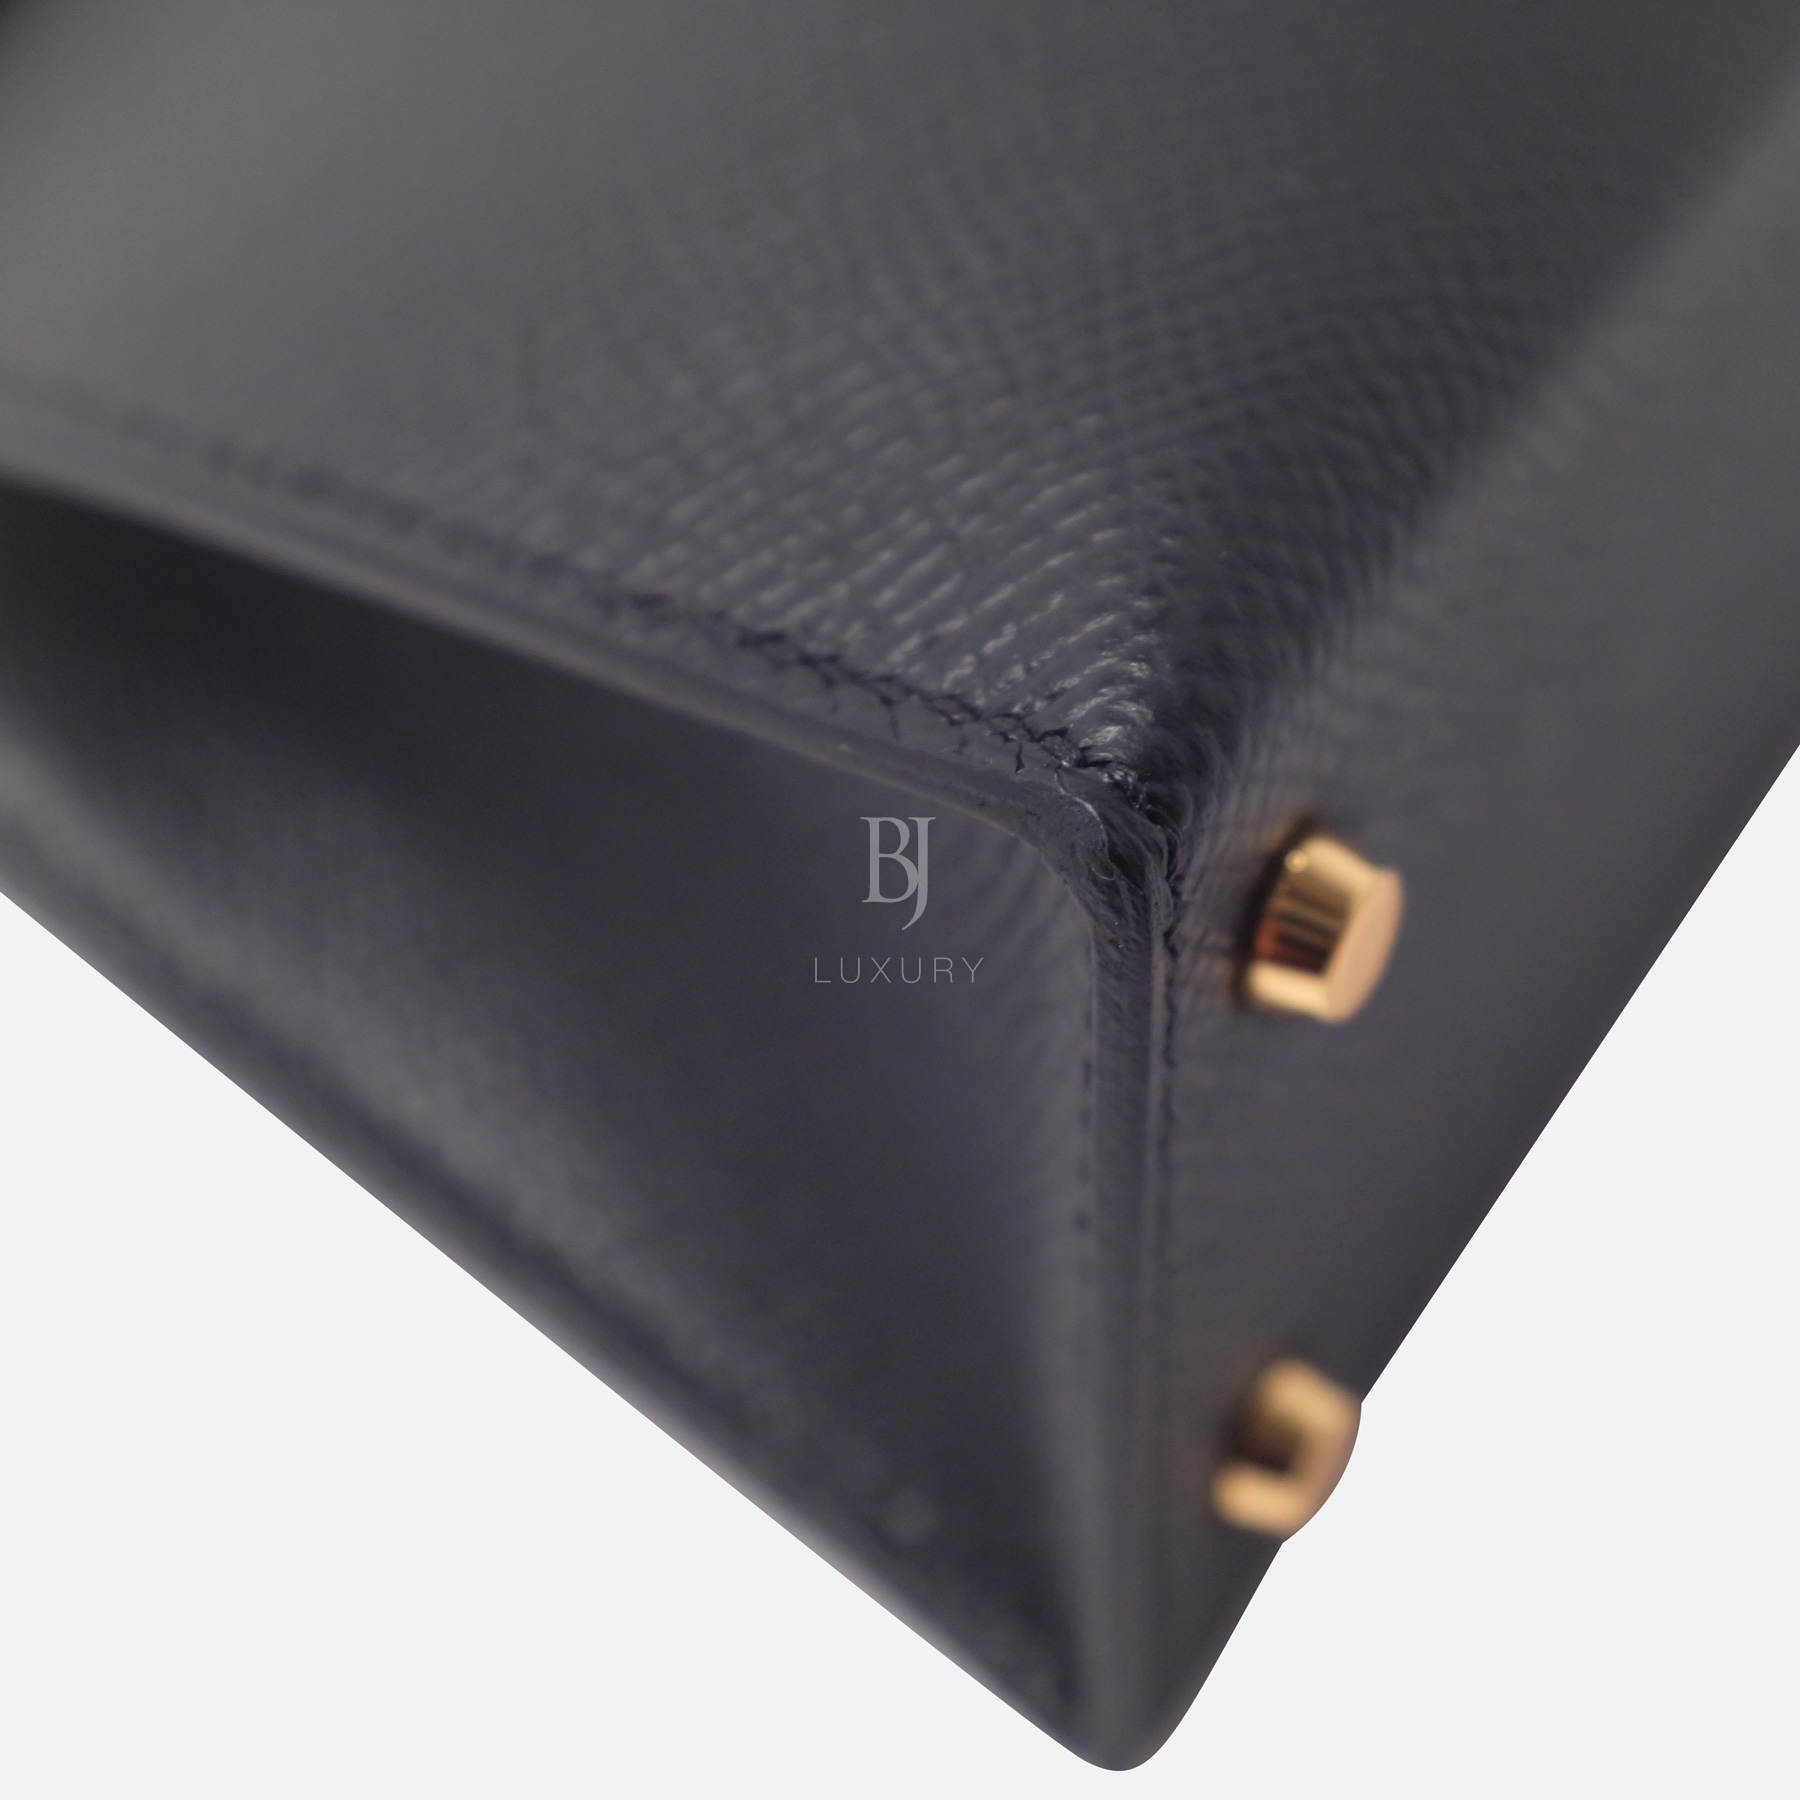 Hermes Kelly Sellier 20 Black Gold Hardware Epsom 11 BJ Luxury.jpg